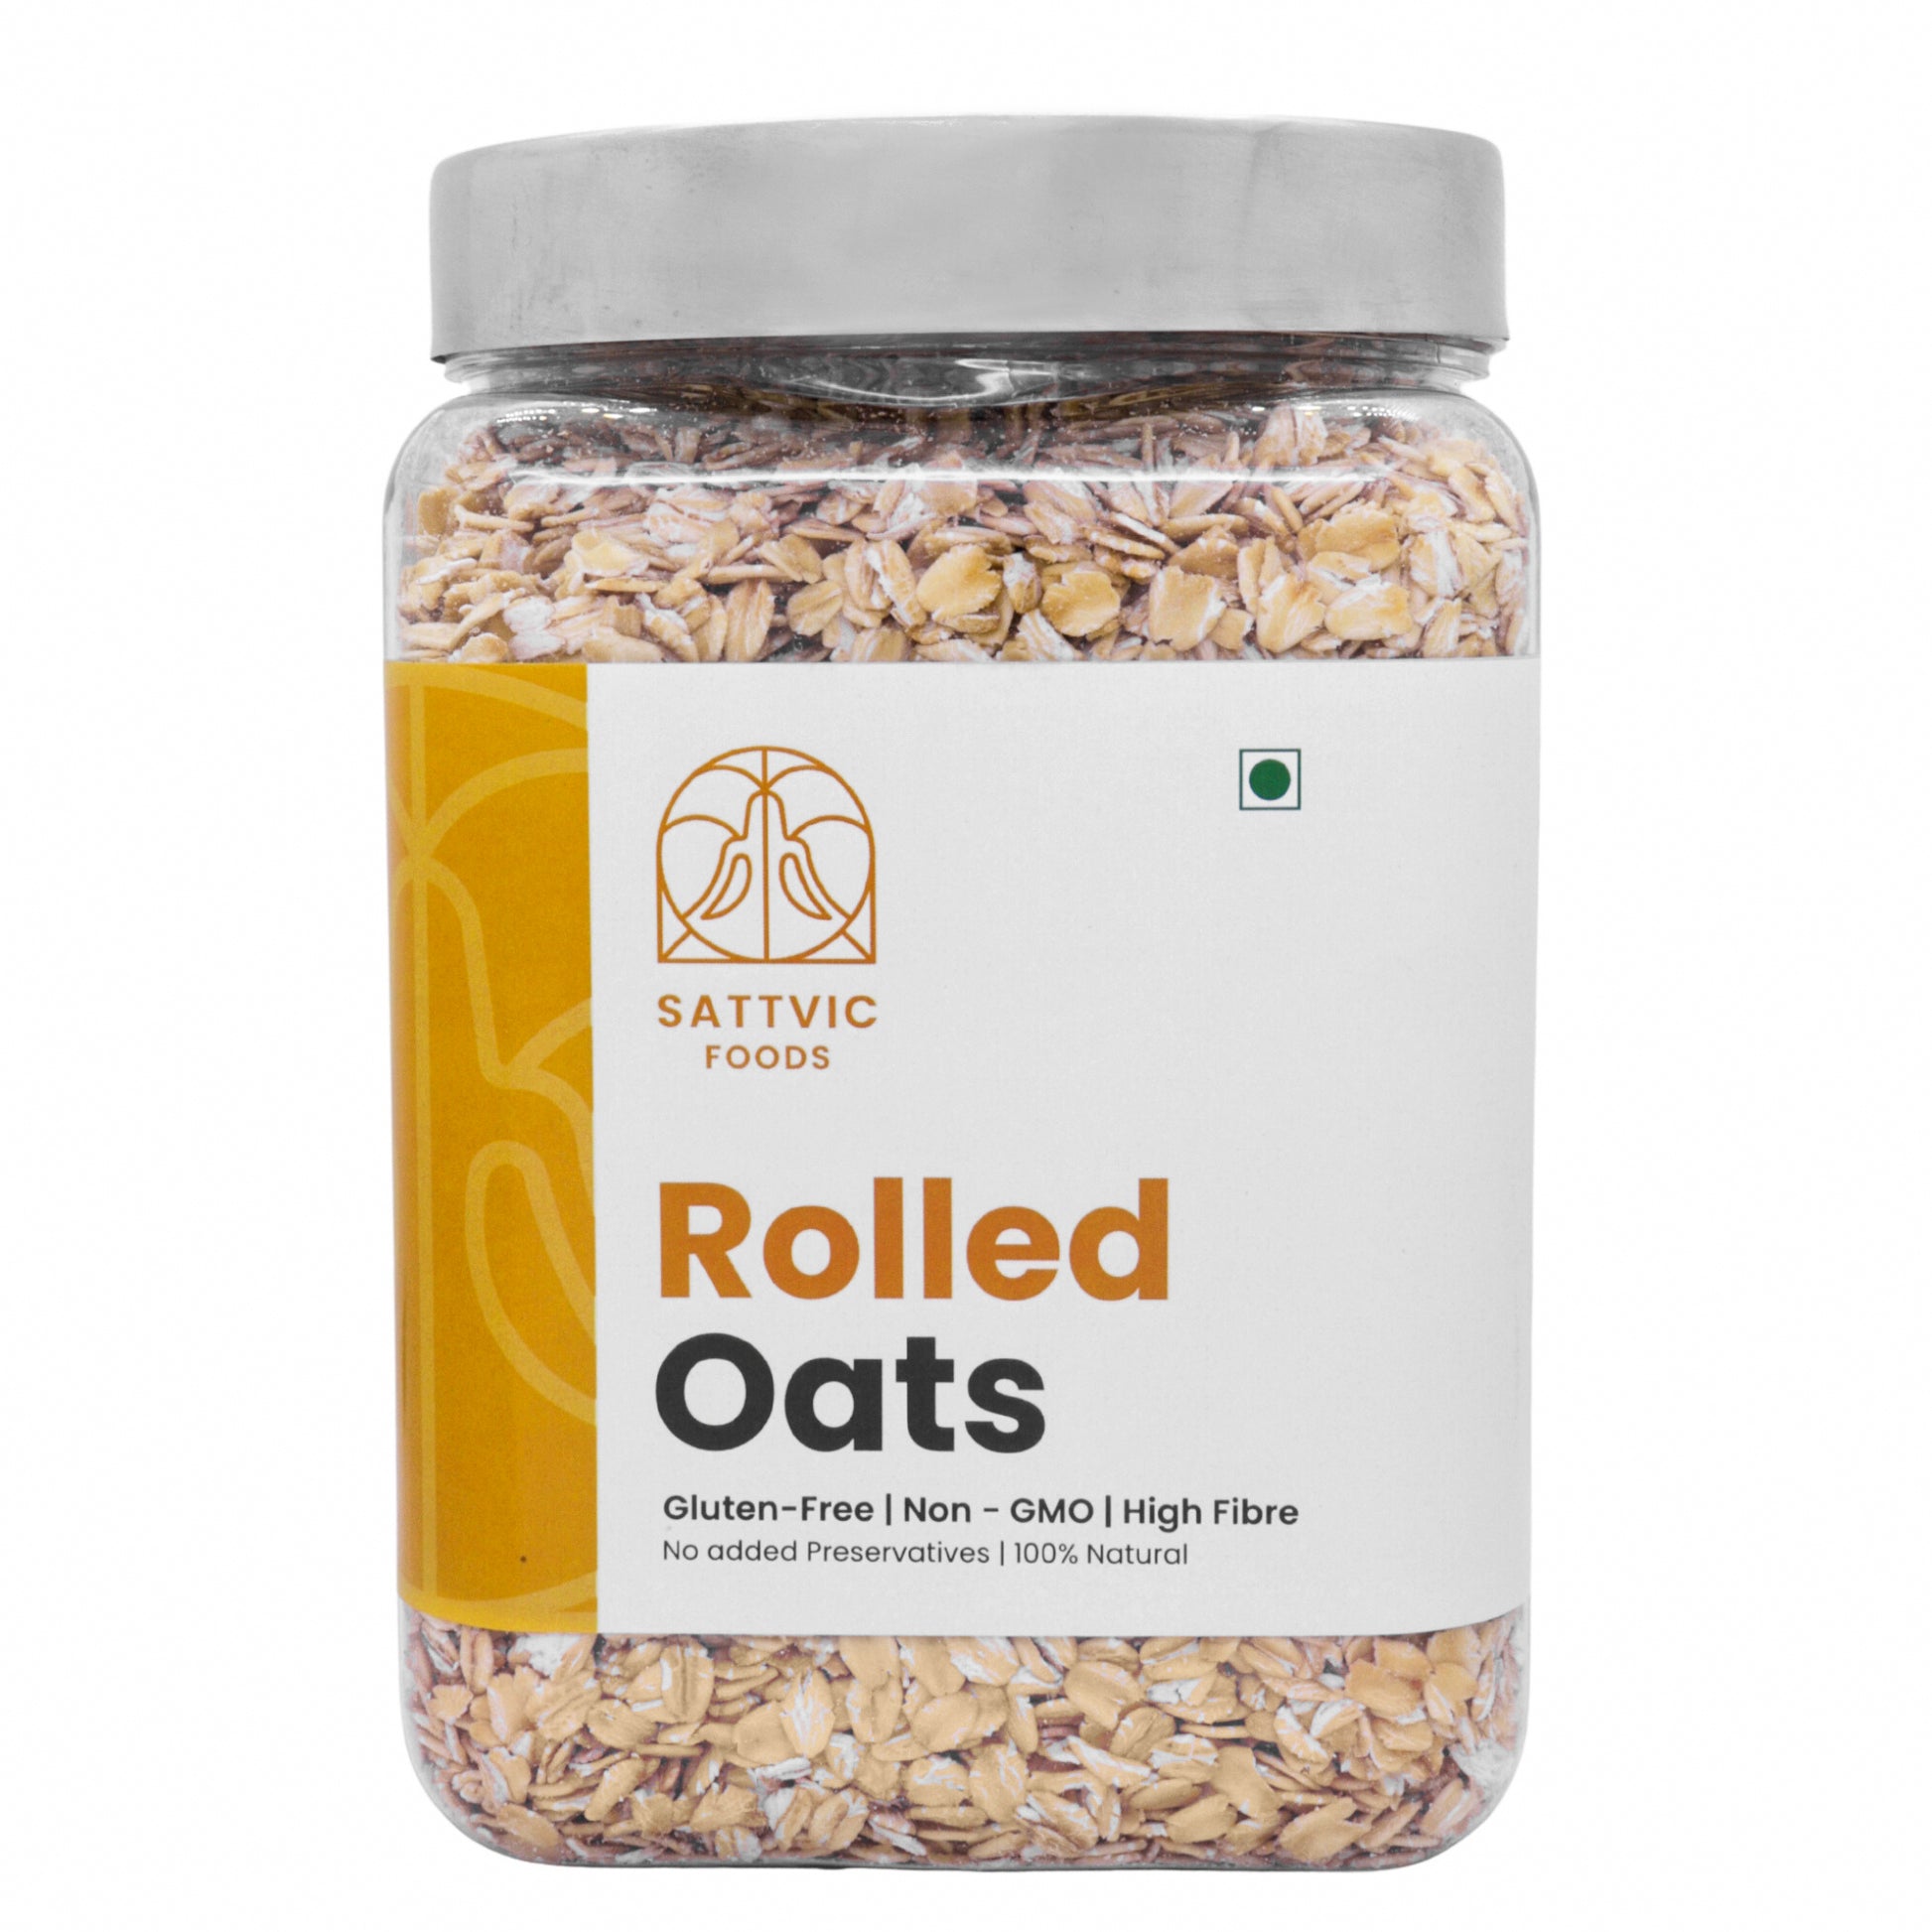 Rolled Oats (Gluten-free)